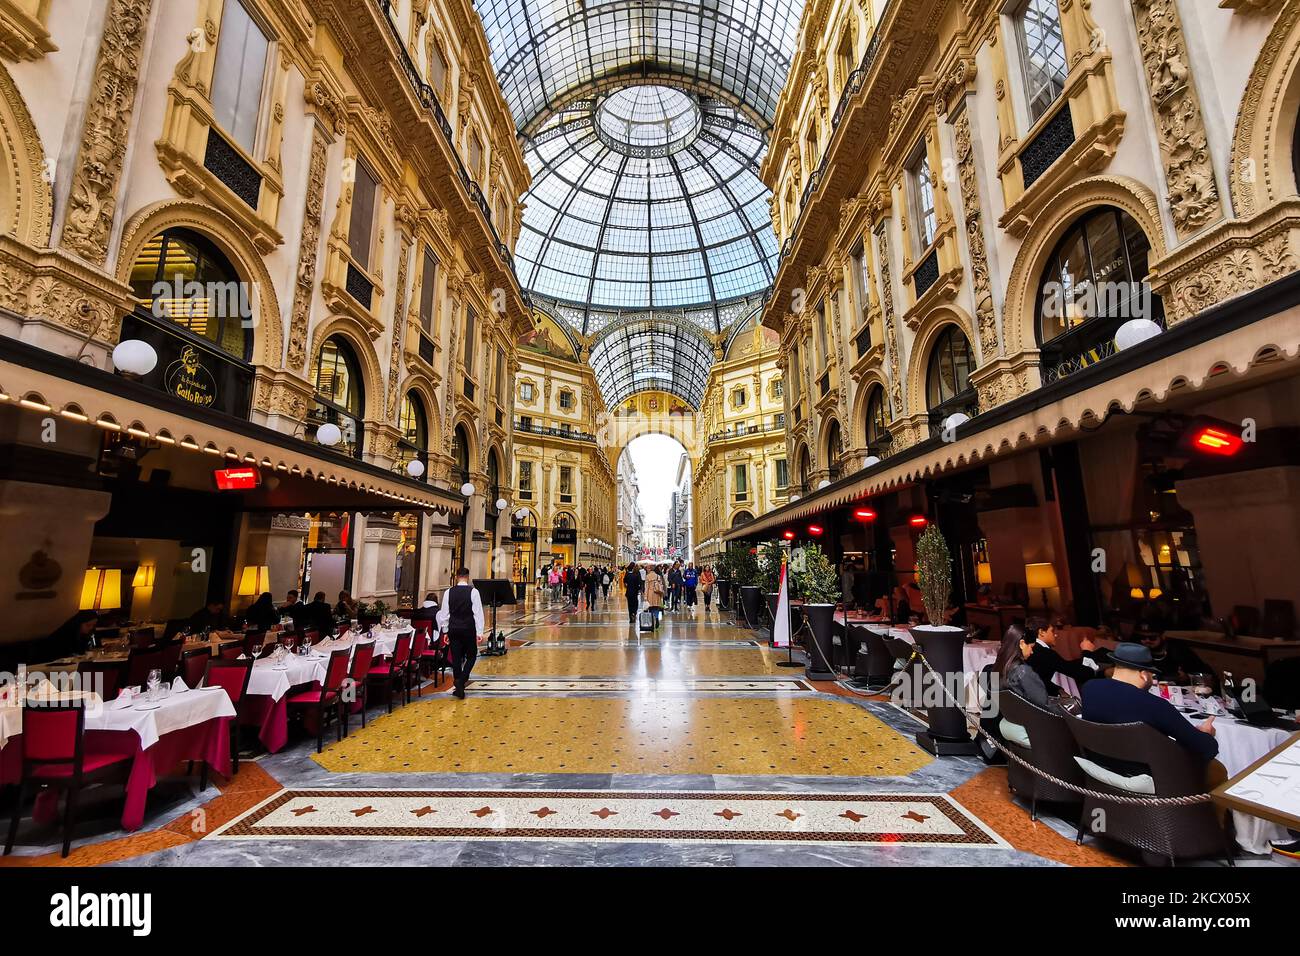 The “Suspended Dinner” in Galleria Vittorio Emanuele II